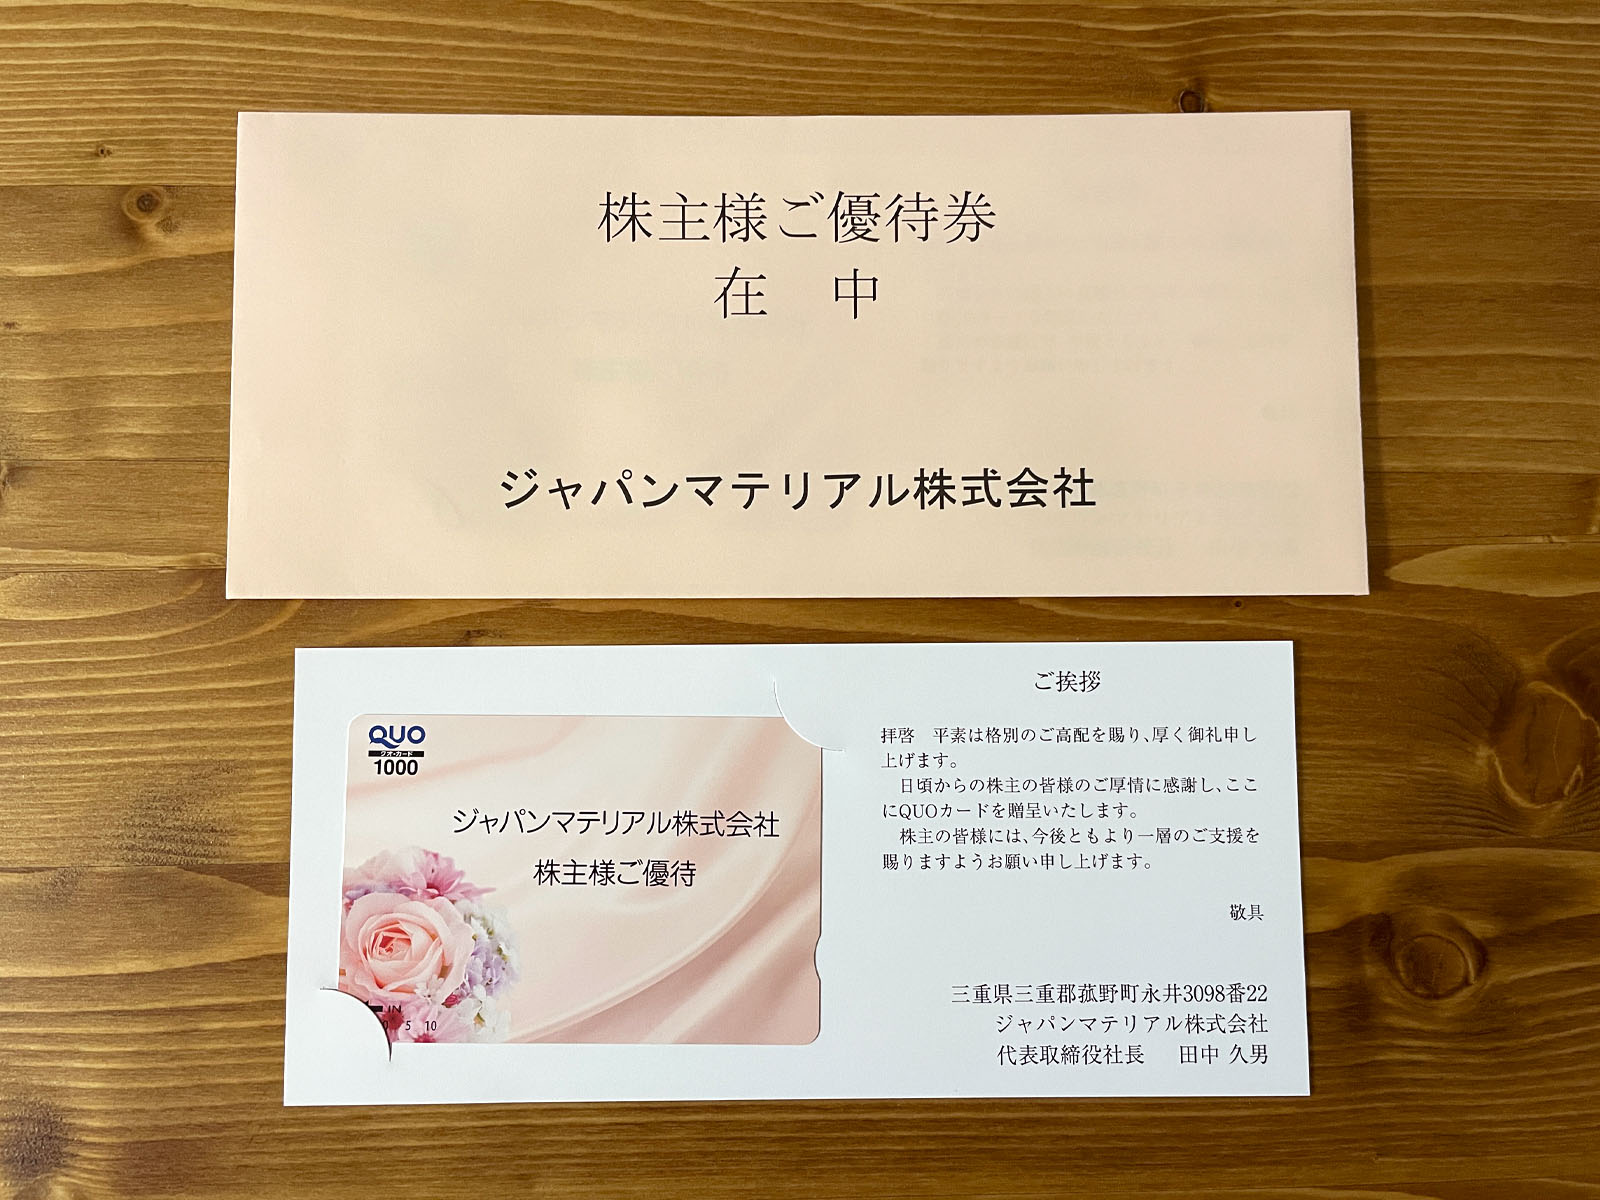 ジャパンマテリアル(6055) の株主優待で1000円相当のQUOカードがきたよ！